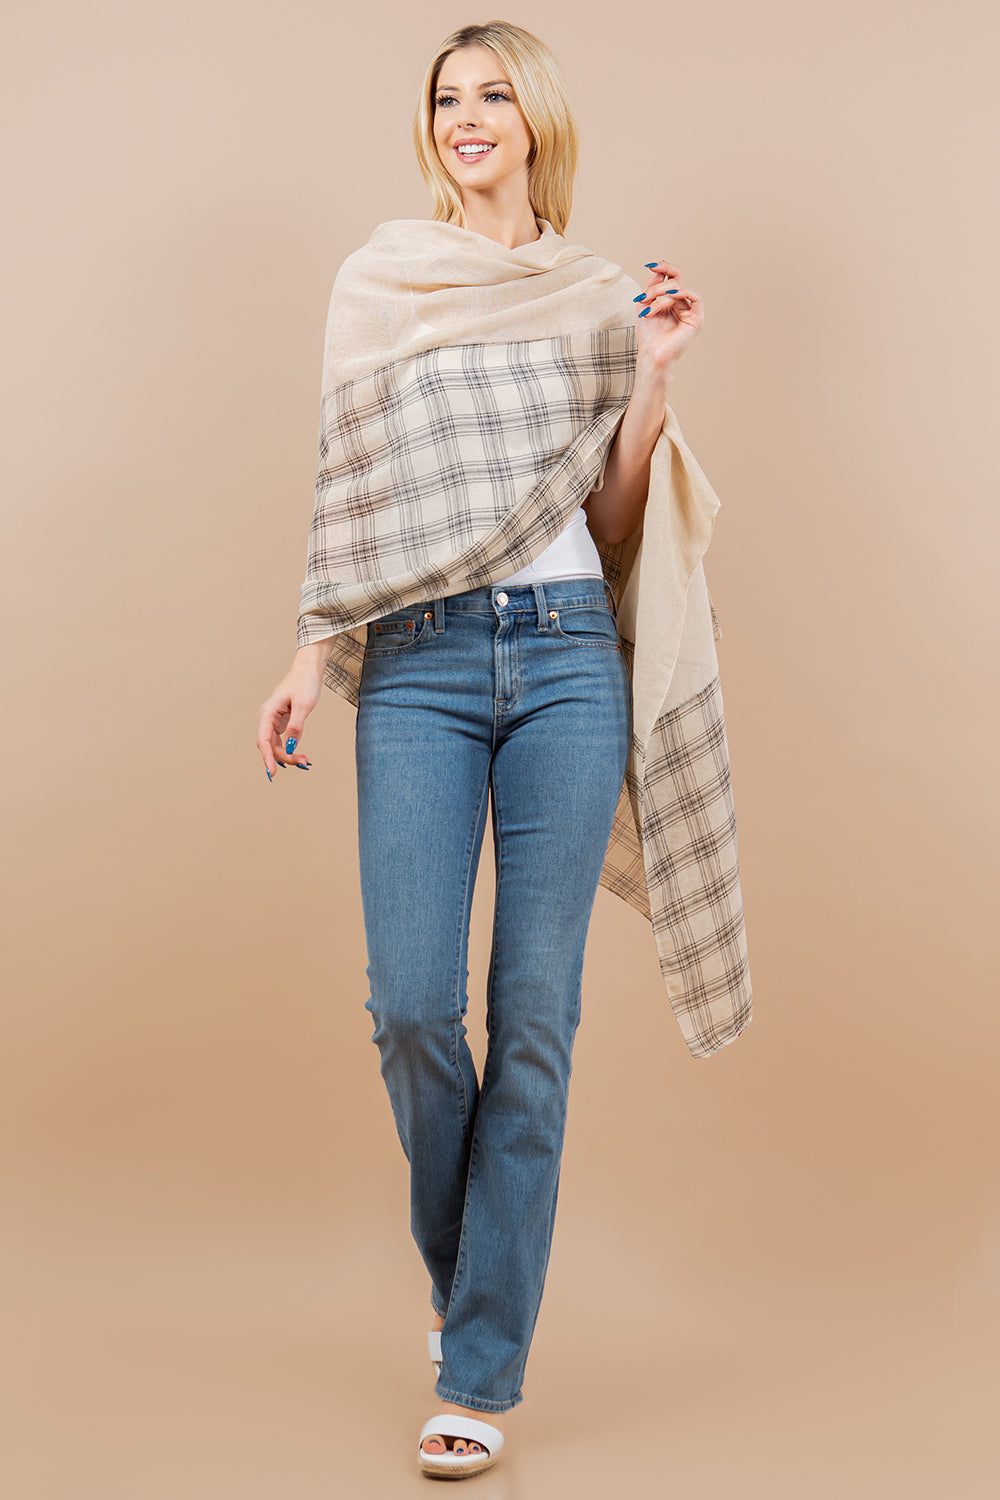 OA-4291 plaid scarf